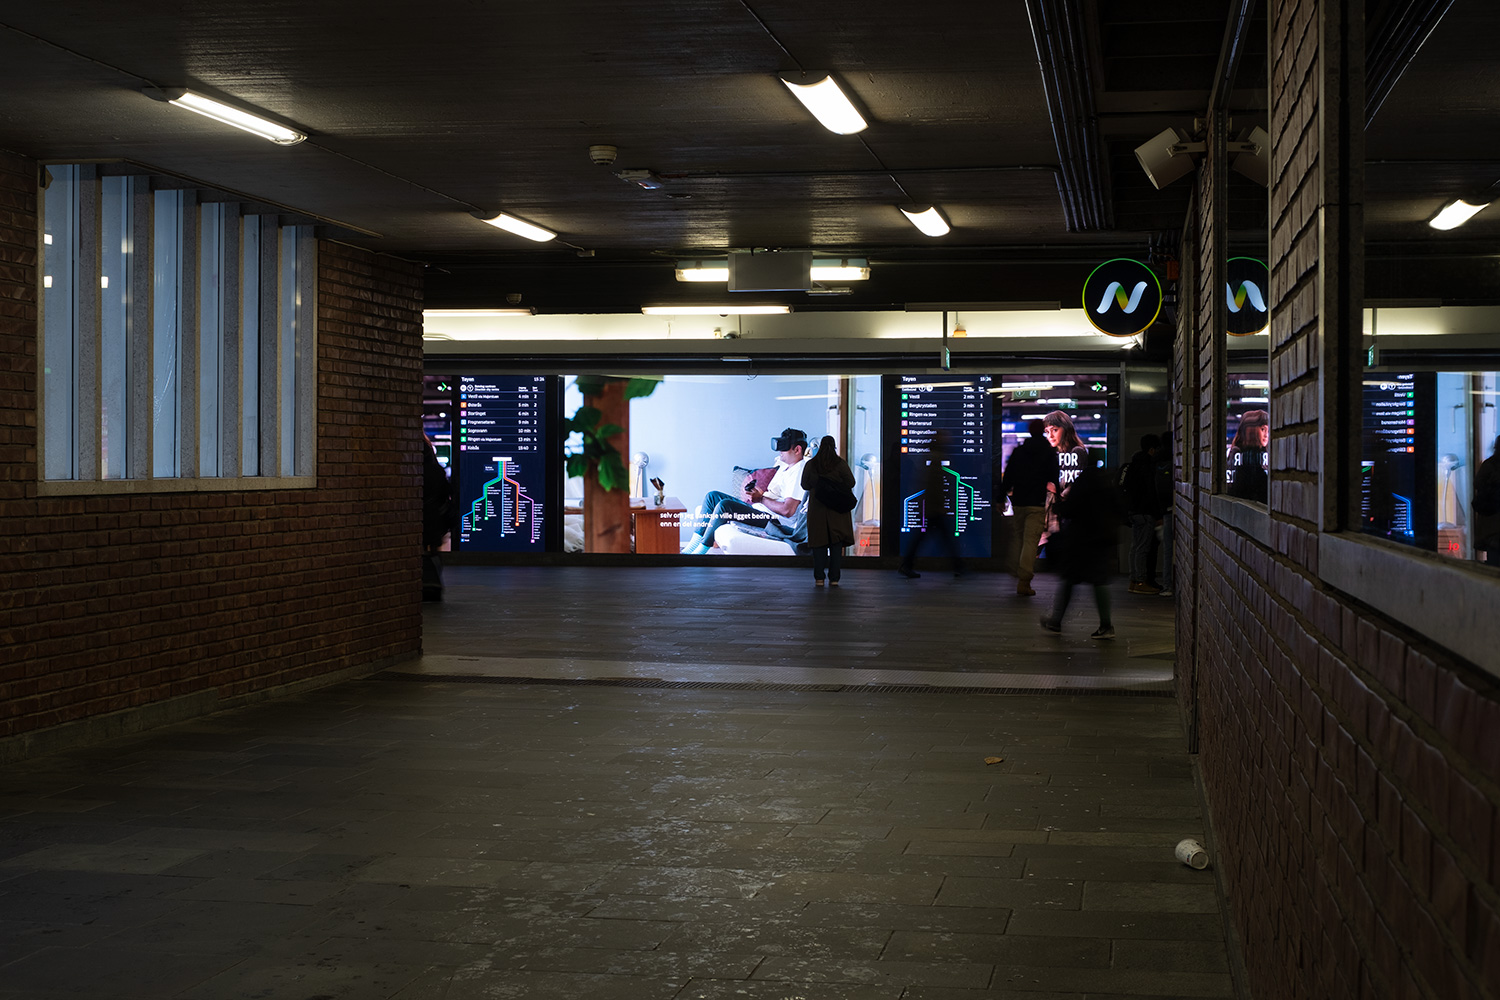 Installed at Tøyen T-banestasjon (subway station)